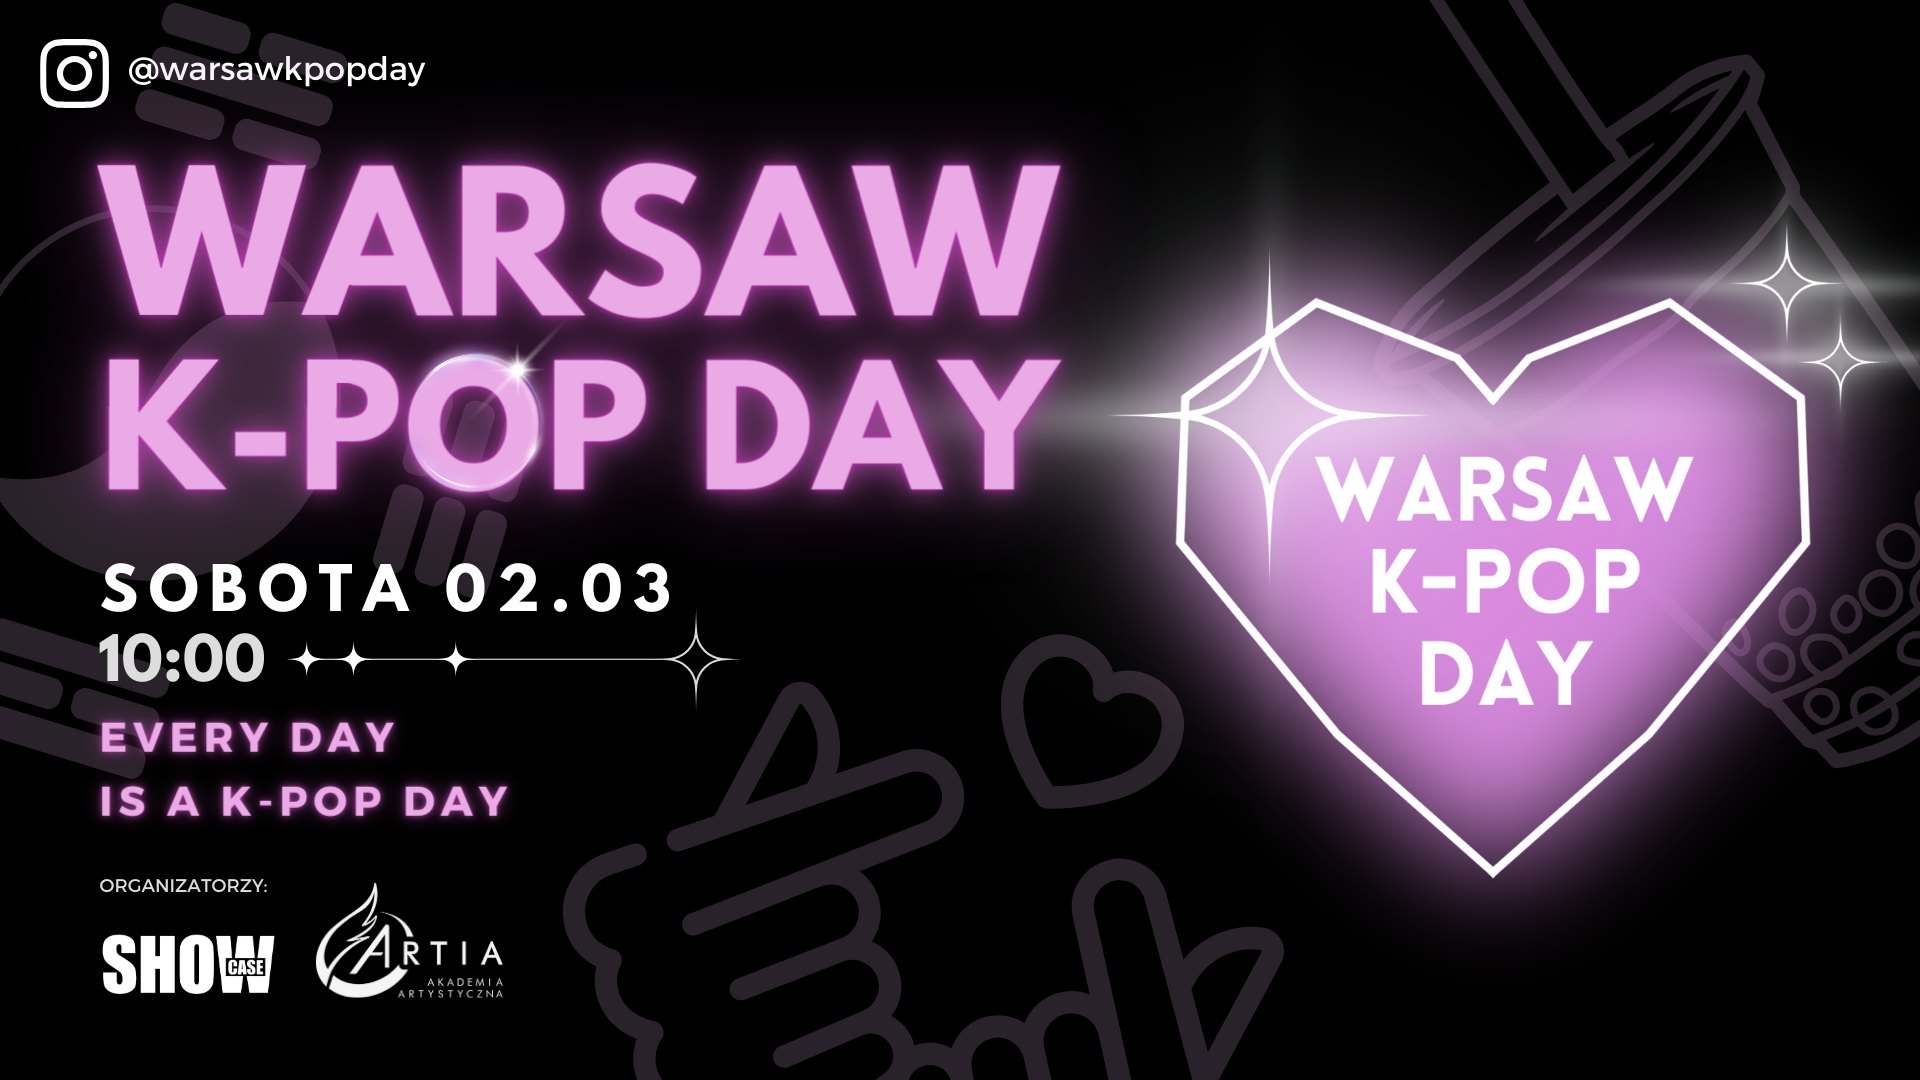 Warsaw K-Pop Day